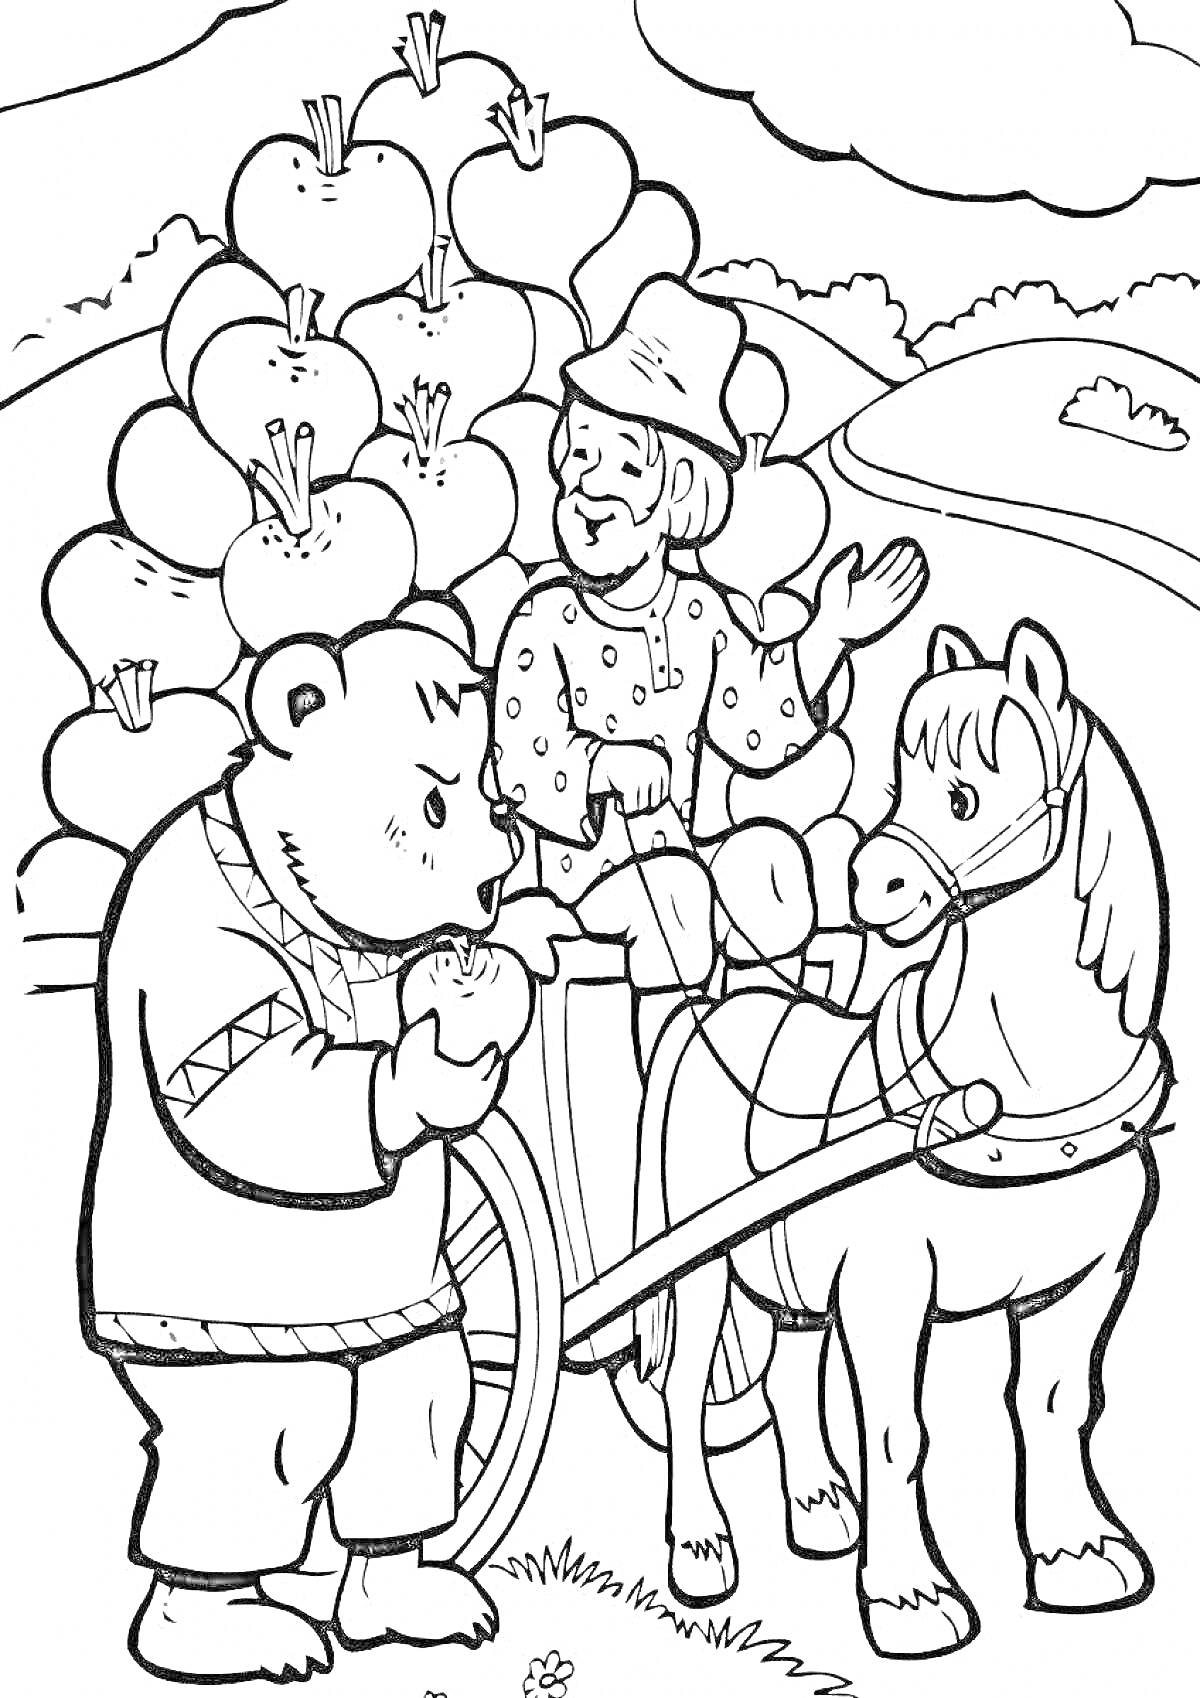 На раскраске изображено: Медведь, Человек, Лошадь, Телега, Репа, Пейзаж, Овощи, Природа, Деревья, Облака